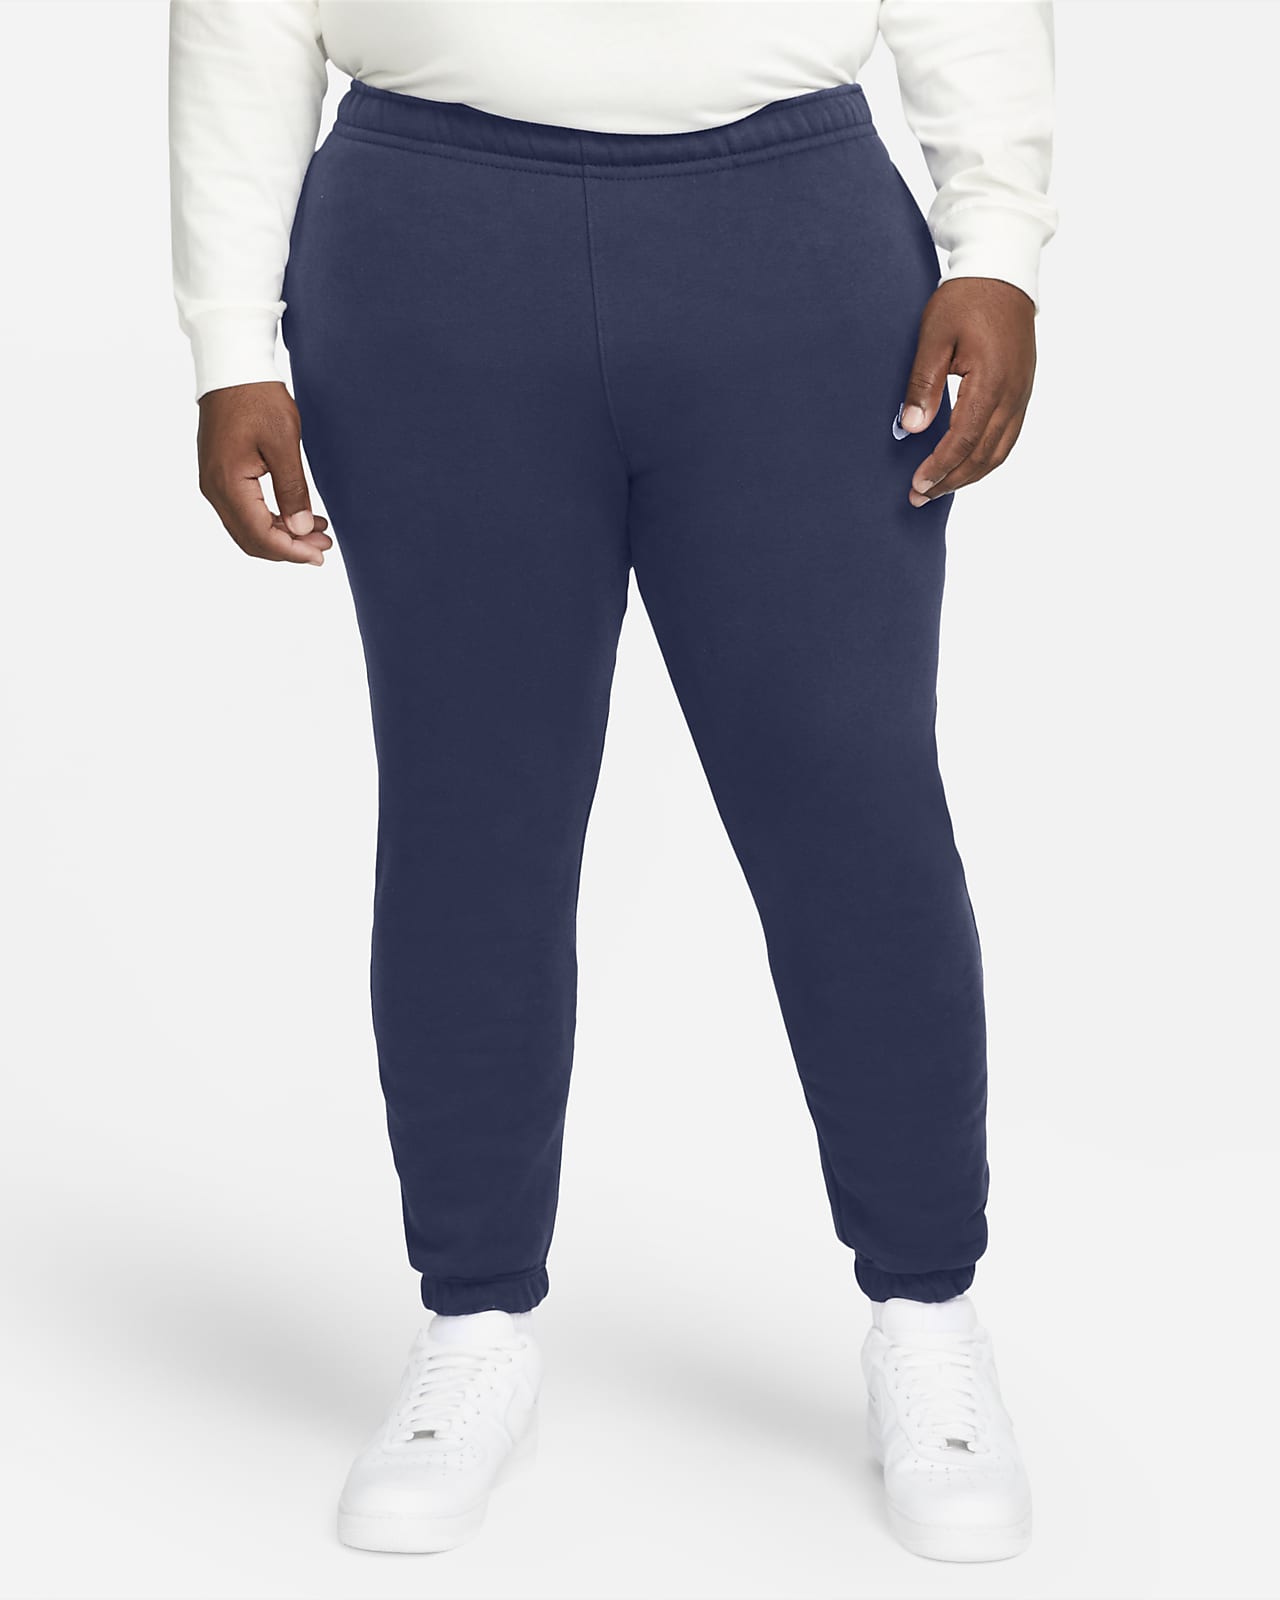 Nike Sportswear Club Fleece Joggers Mens Bottoms Grey Multi Size